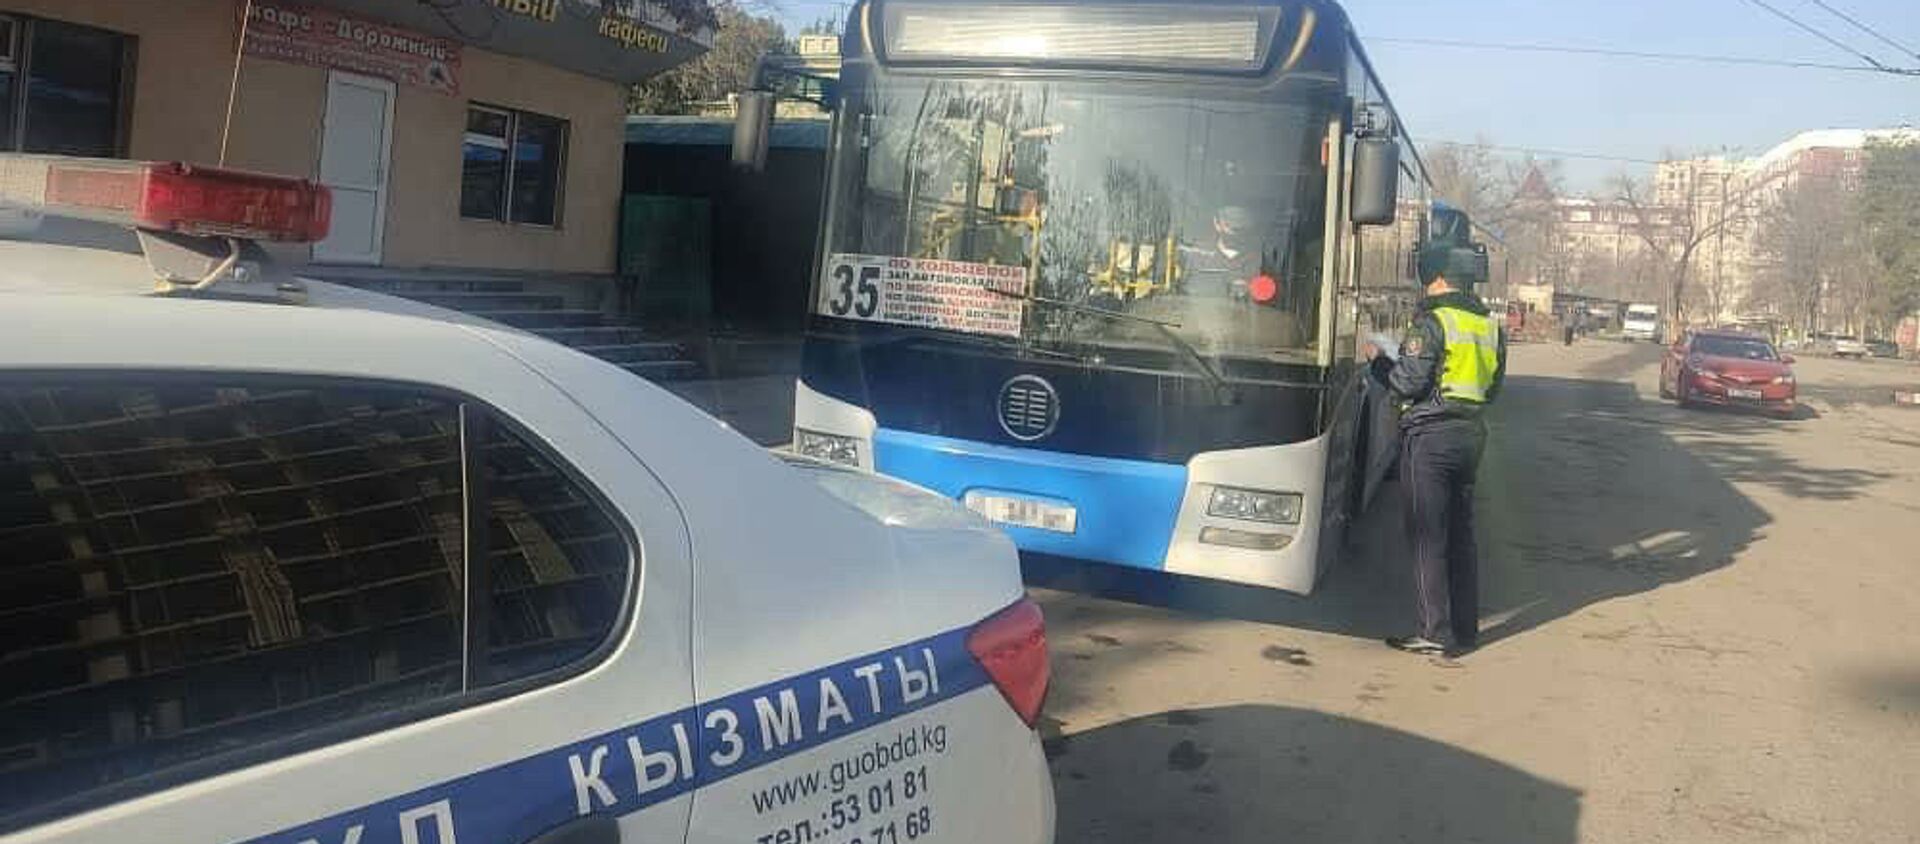 В Бишкеке два пассажирских автобуса попали на штрафстоянку из-за несвоевременной уплаты водителями штрафов за нарушения - Sputnik Кыргызстан, 1920, 14.03.2021